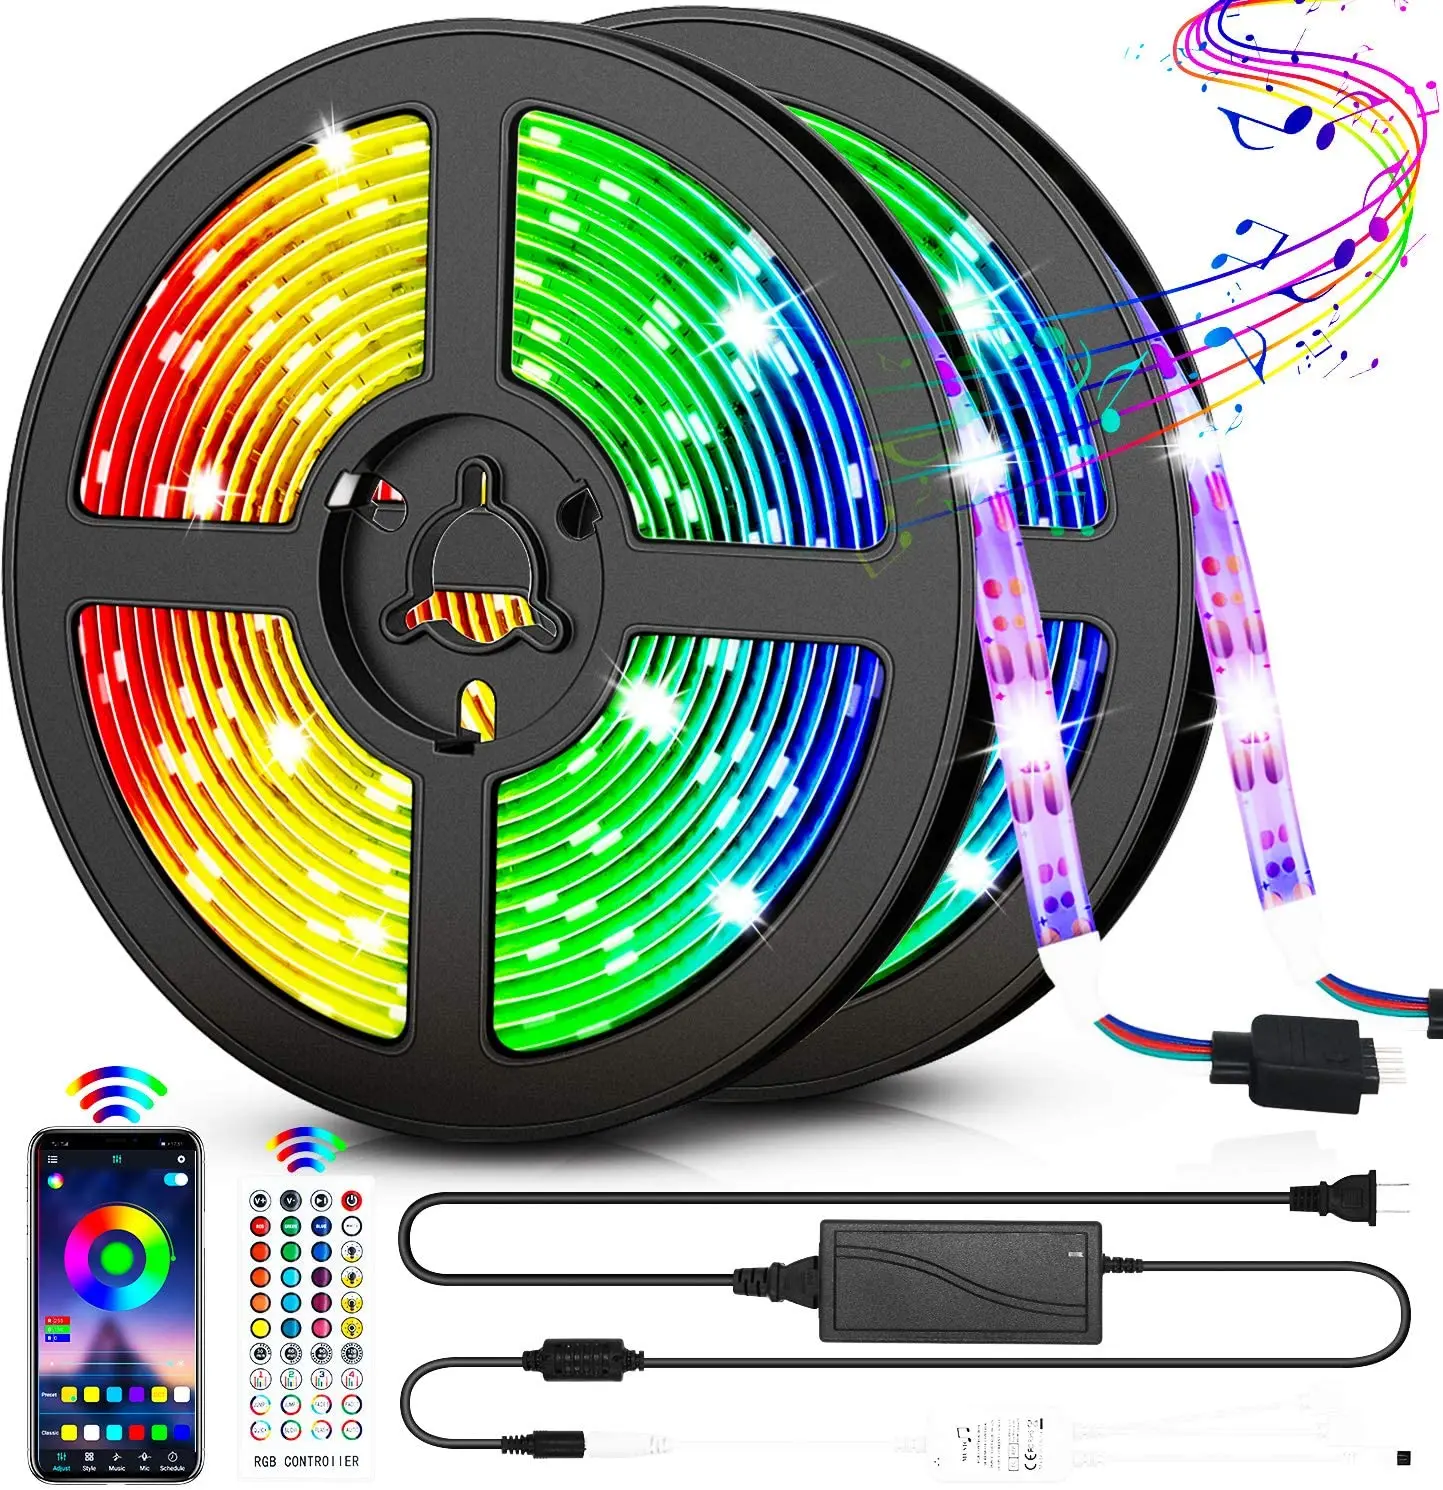 LED Strip Lights 32.8FT/10M 300 LEDs Waterproof RGB Light Strip Kits with Remote for Room  Bedroom TV Kitchen Desk